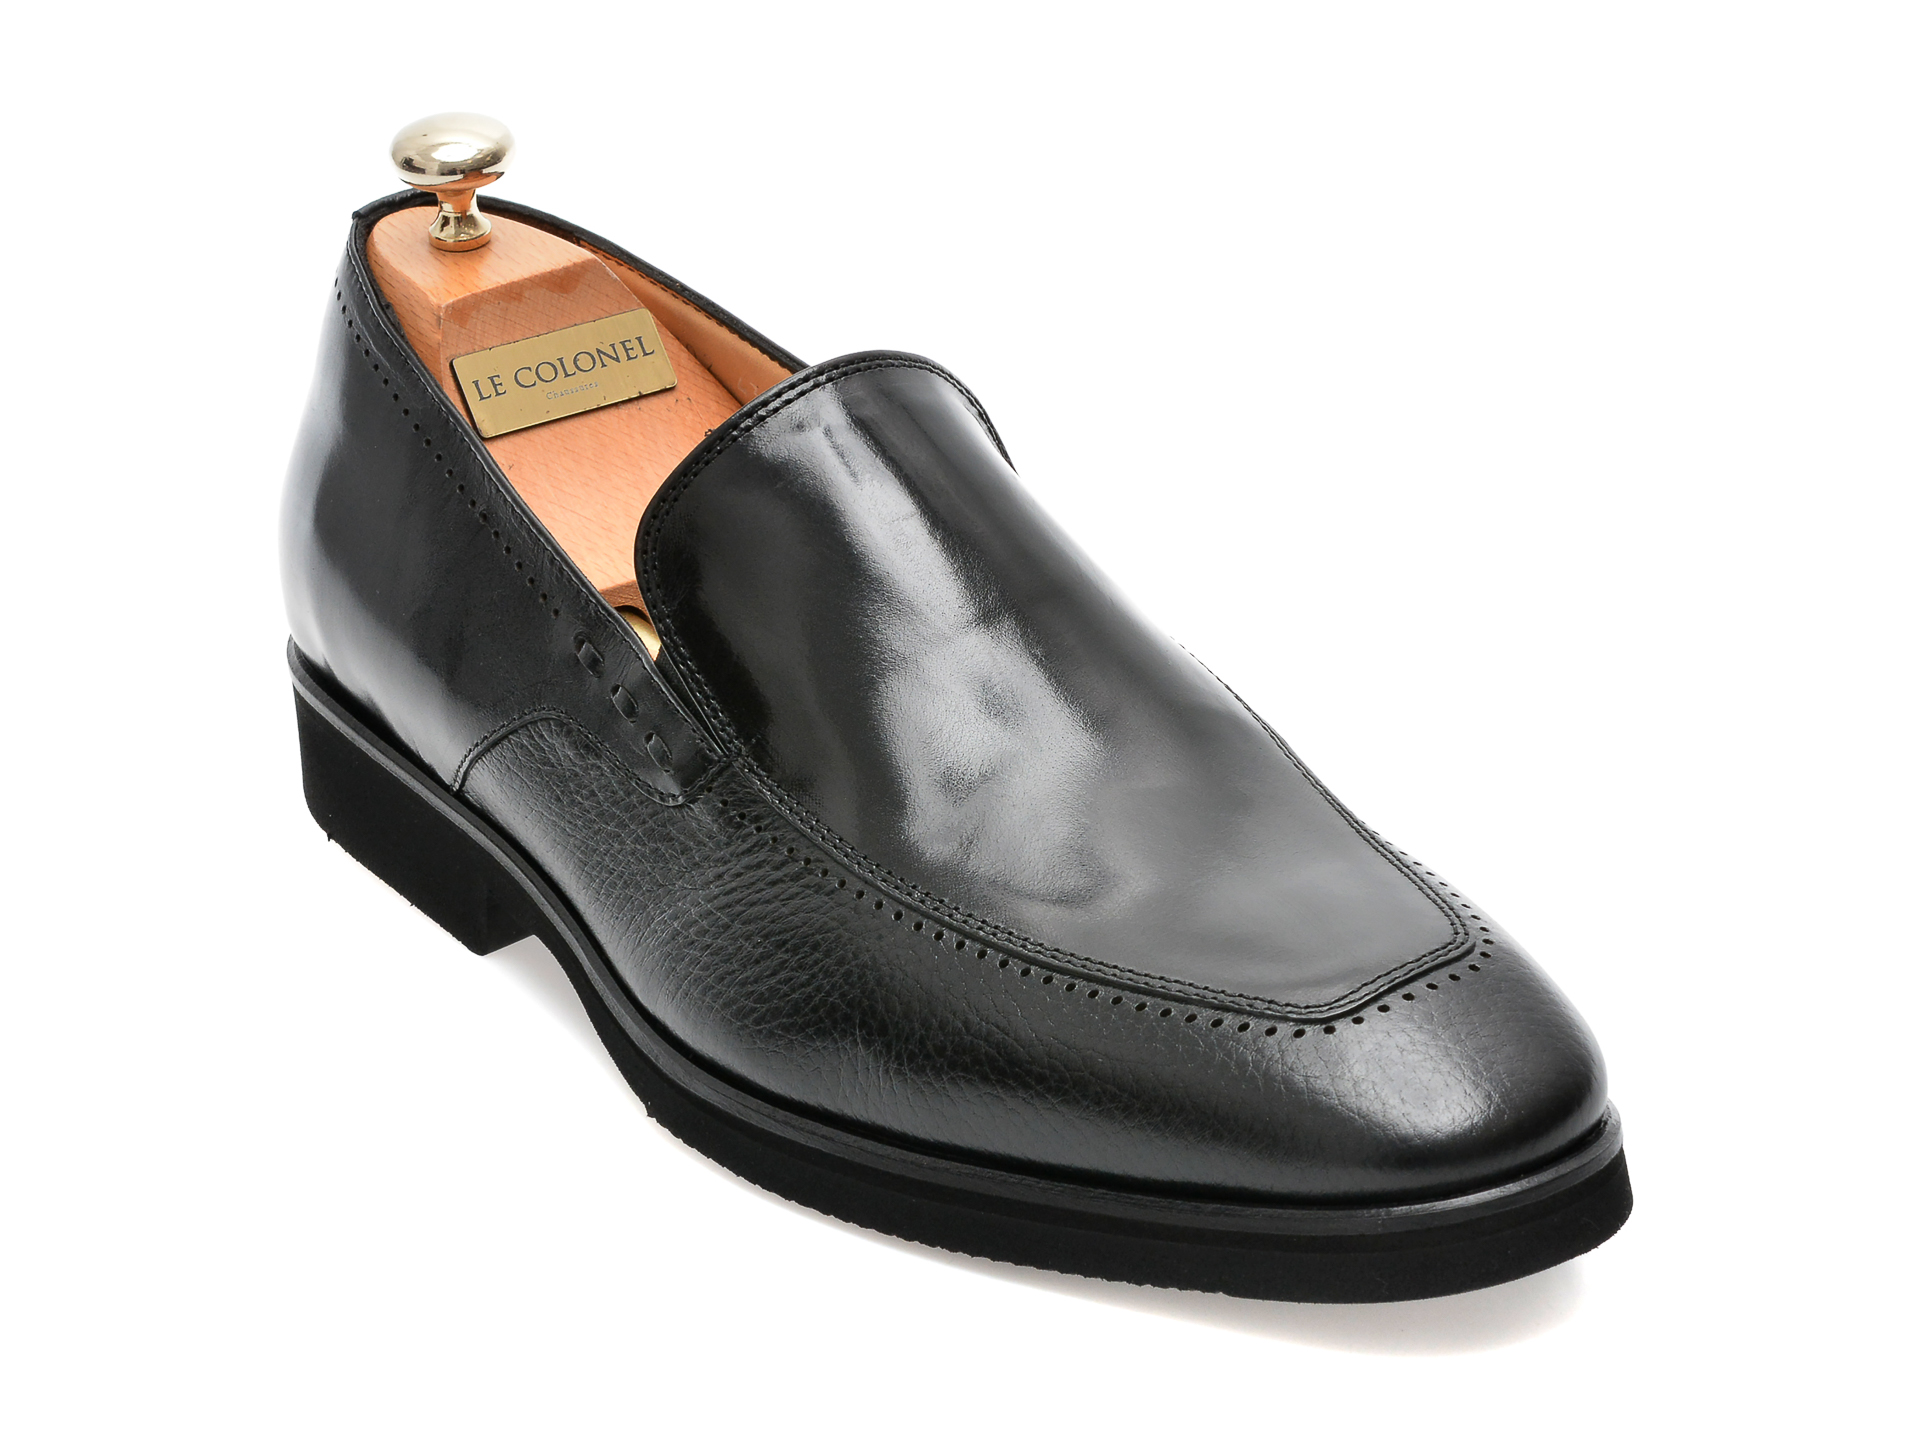 Pantofi LE COLONEL negri, 48702, din piele naturala Le Colonel